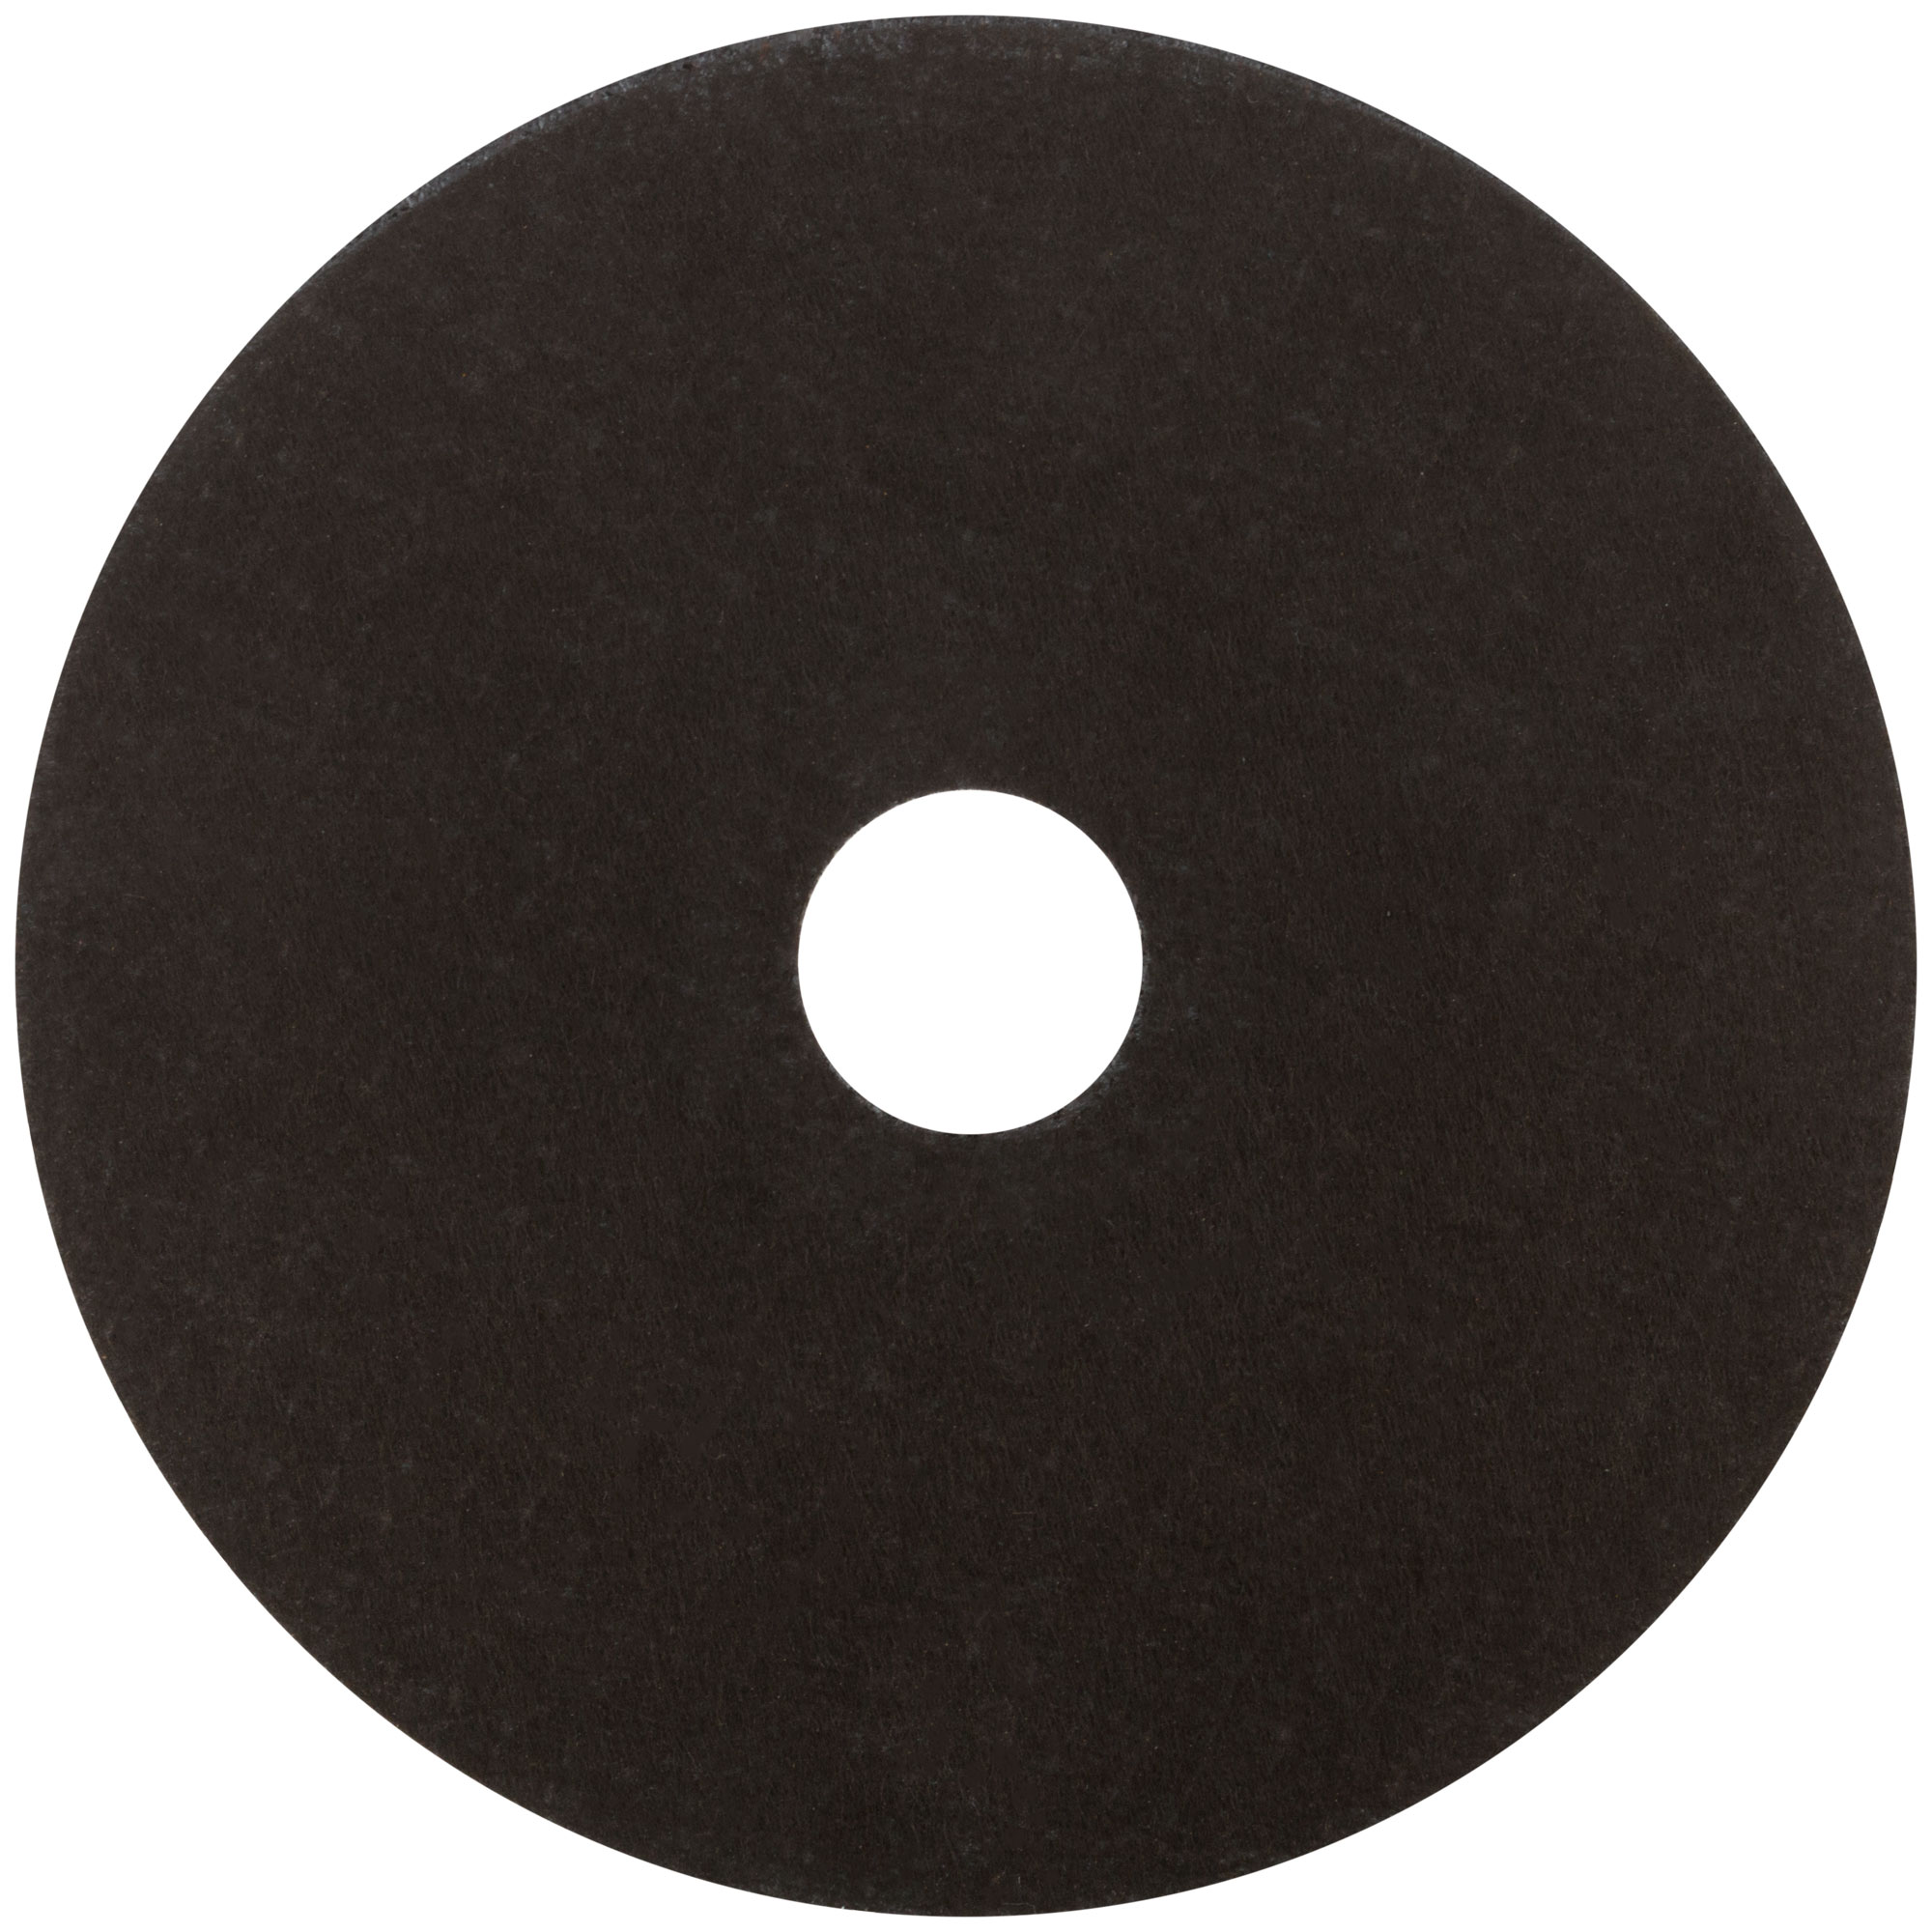 Профессиональный диск отрезной по металлу и нержавеющей стали Т41-125 х 1,0 х 22,2 мм Cutop Profi Plus